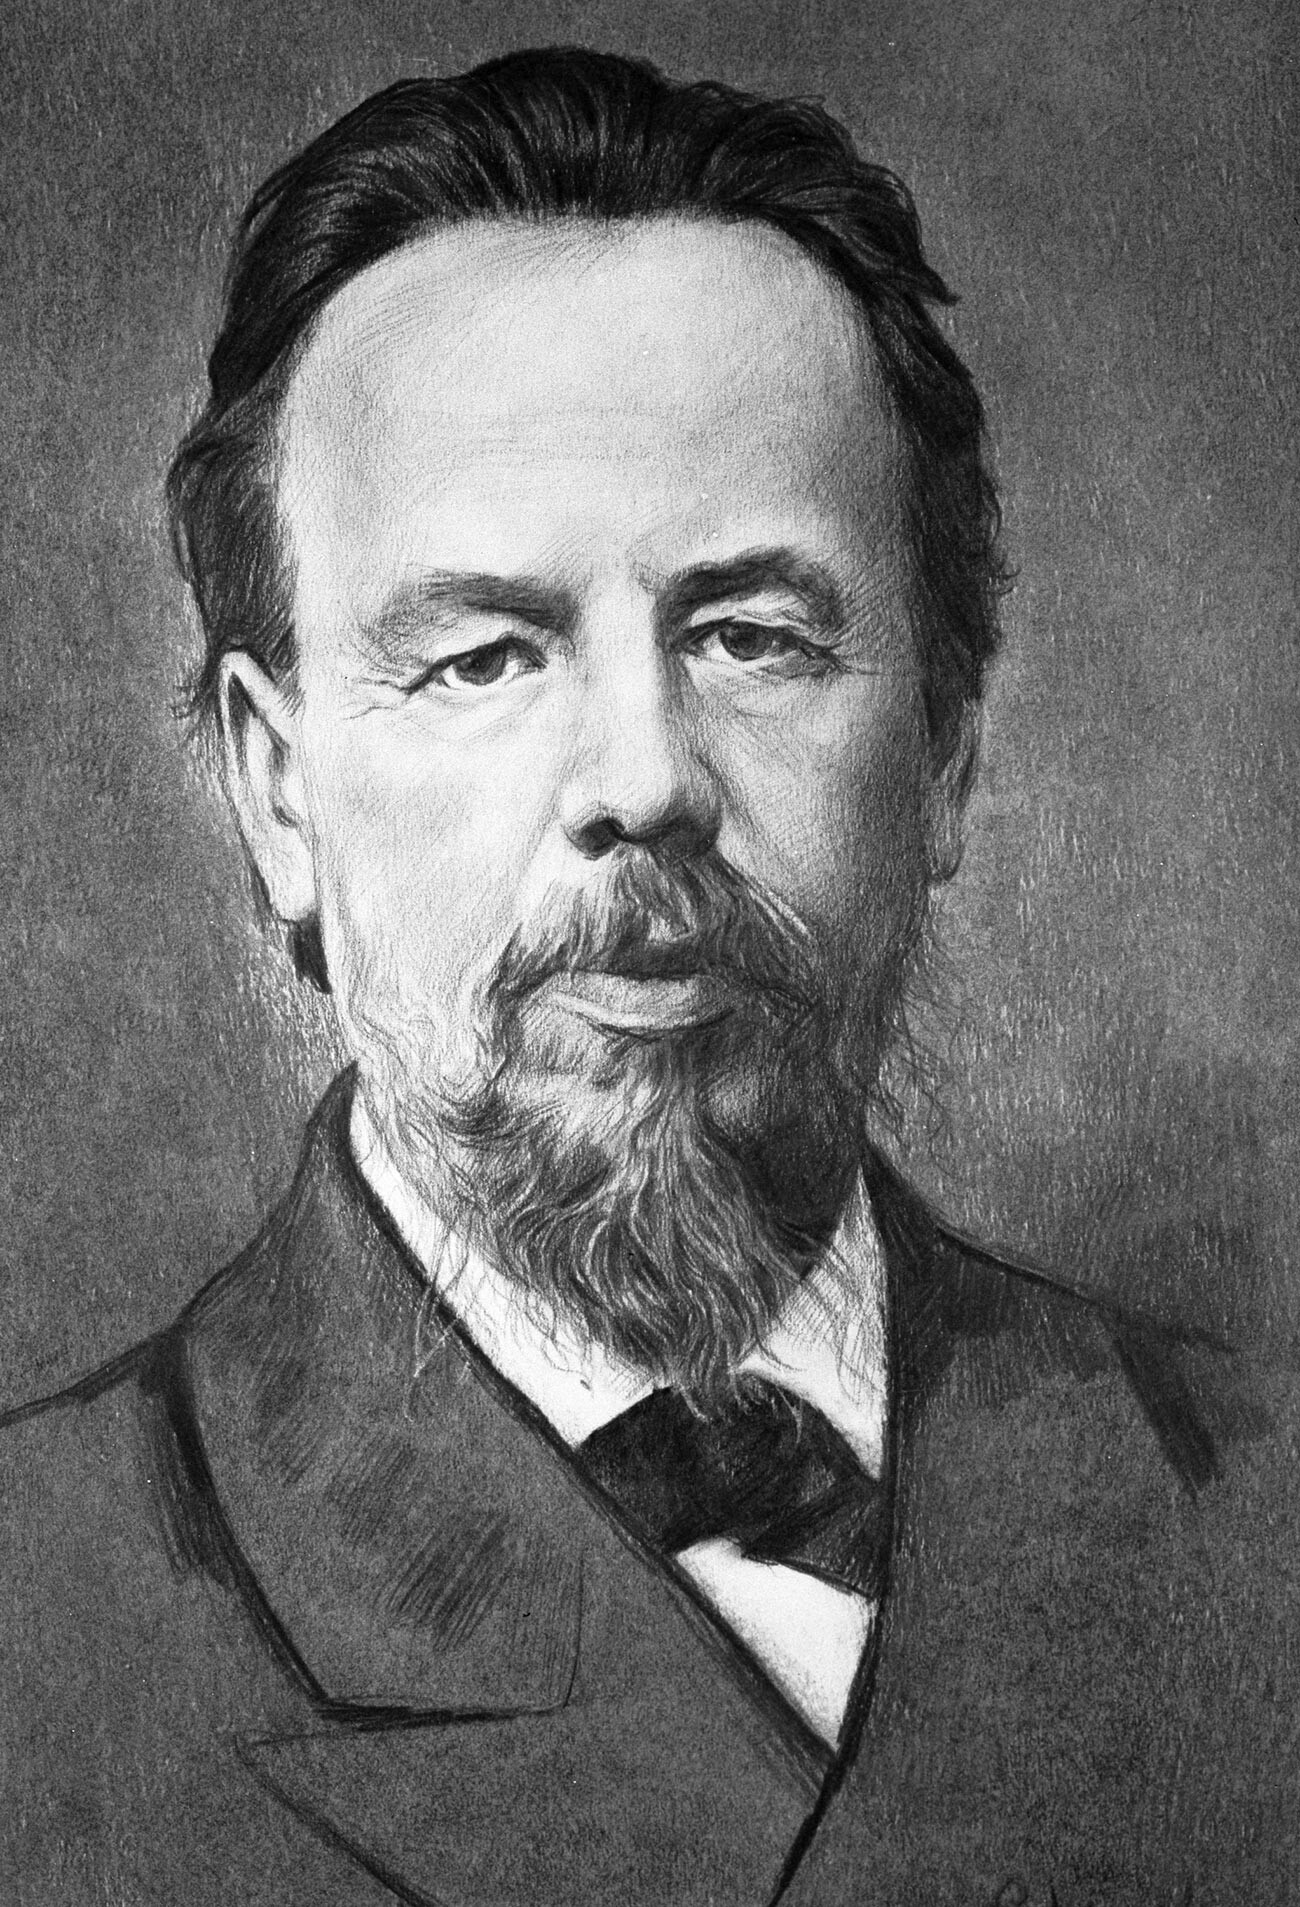 Reproduktion eines Porträts des russischen Wissenschaftlers, Radioerfinders Alexander Popow.